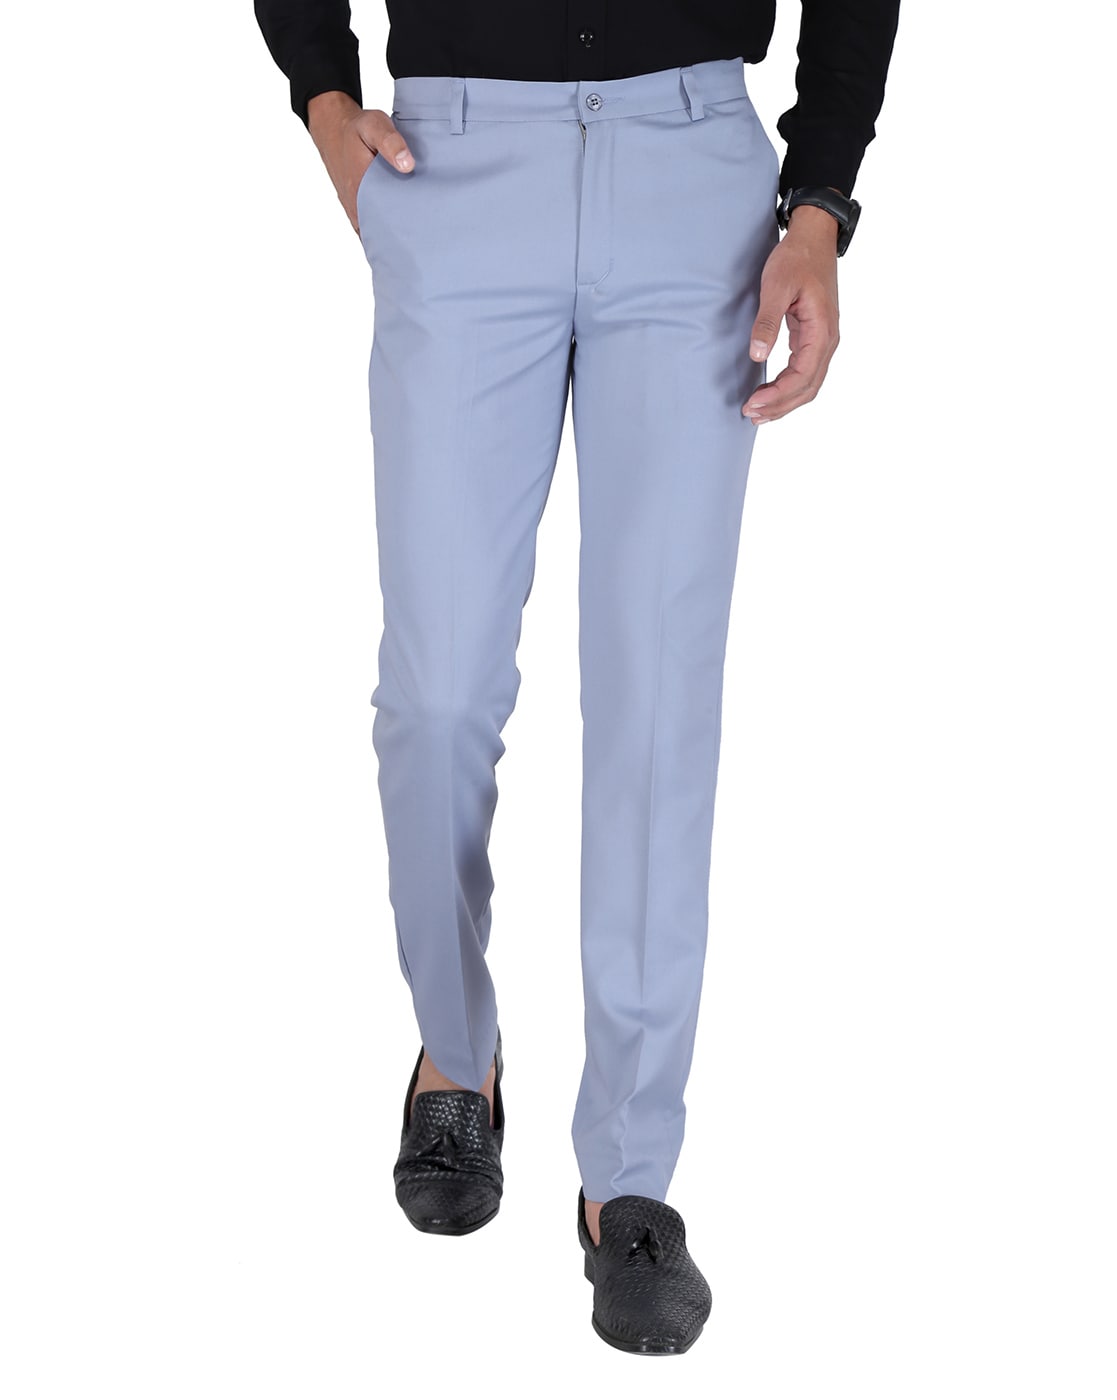 Stylish Men Pants Formal Groom Suit Pants Straight Zipper Male Suit Pants  Match Shirt - Suit Pants - AliExpress